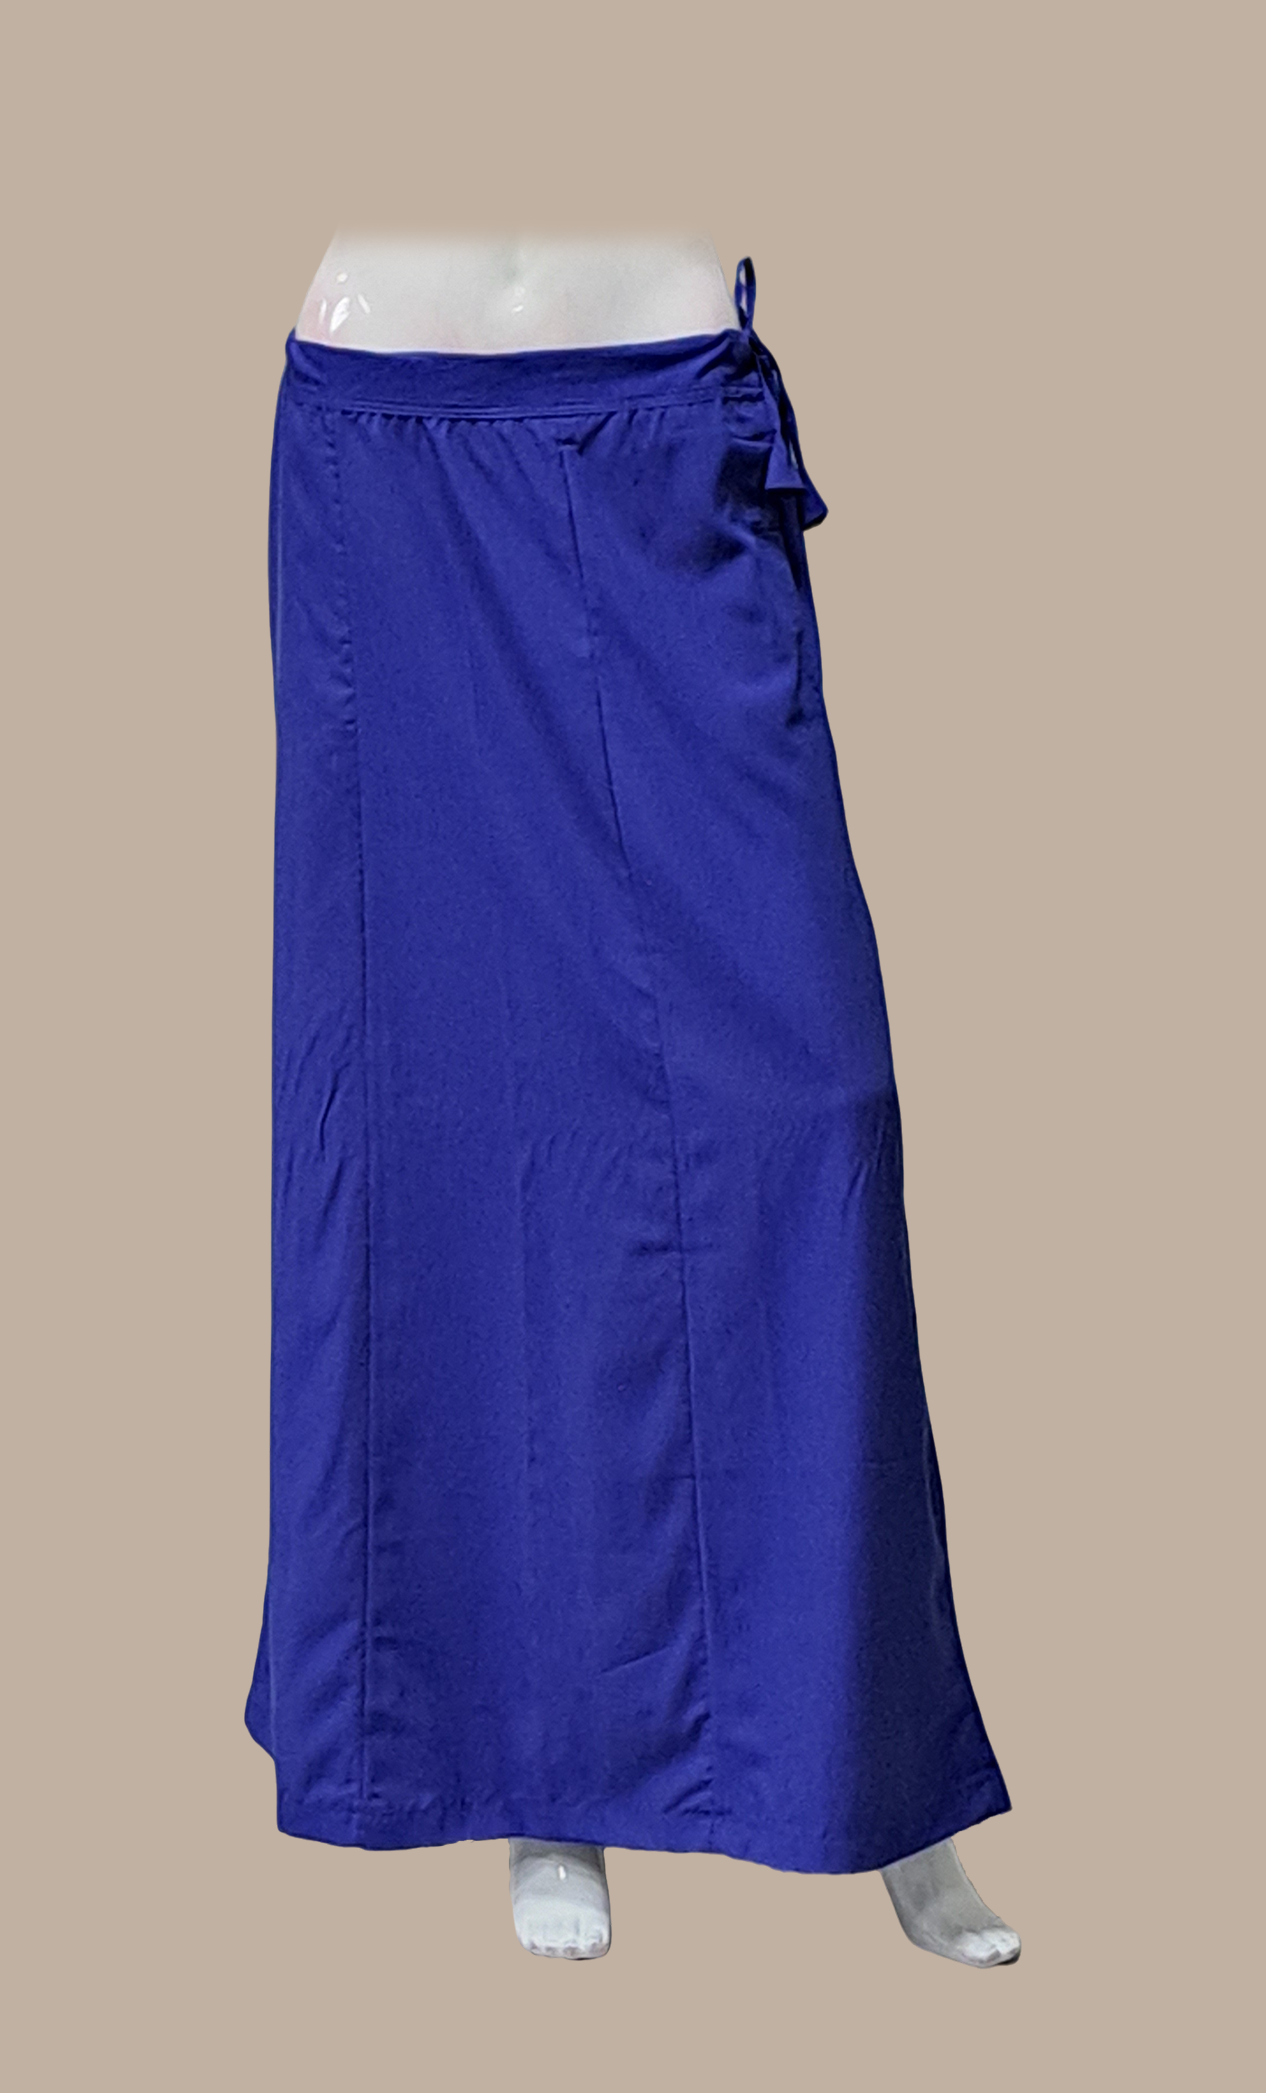 Blue Cotton Under Skirt